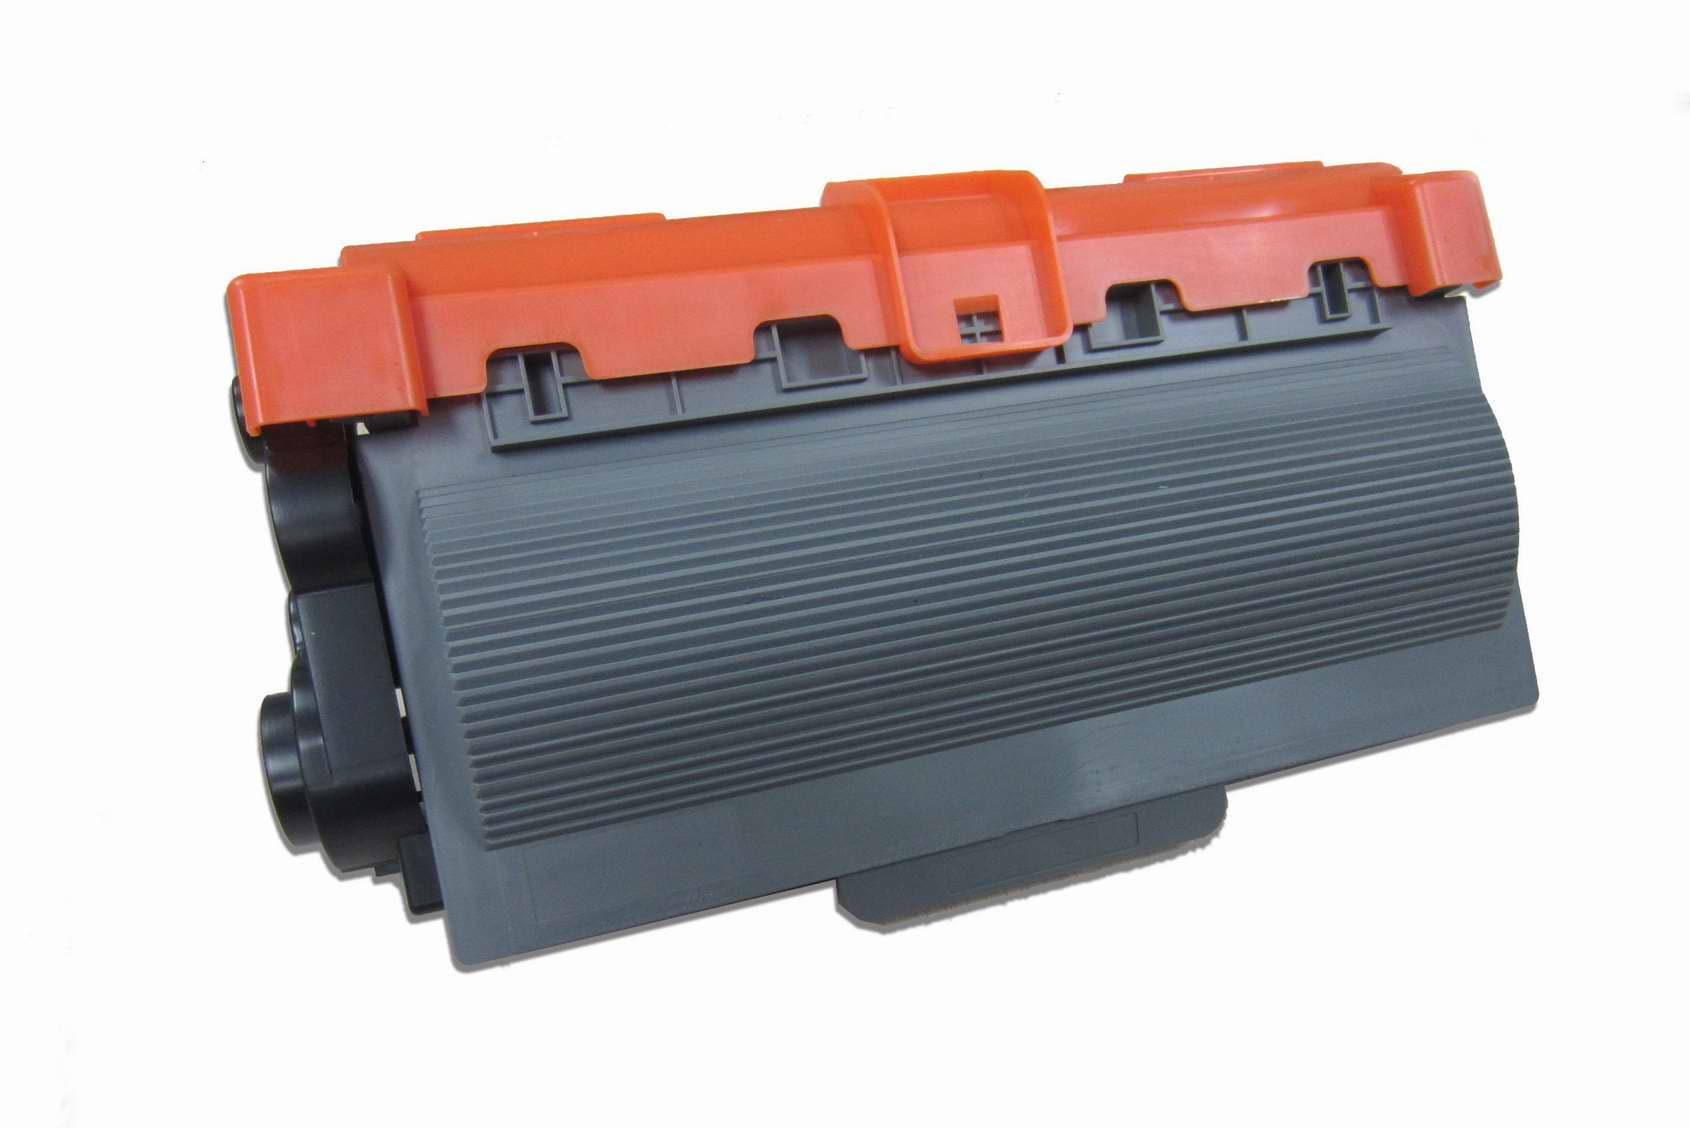 New compatible brother toner cartridge,TN-350,TN-360,TN-580,TN-330,TN-460,TN-750,TN-310,TN-110